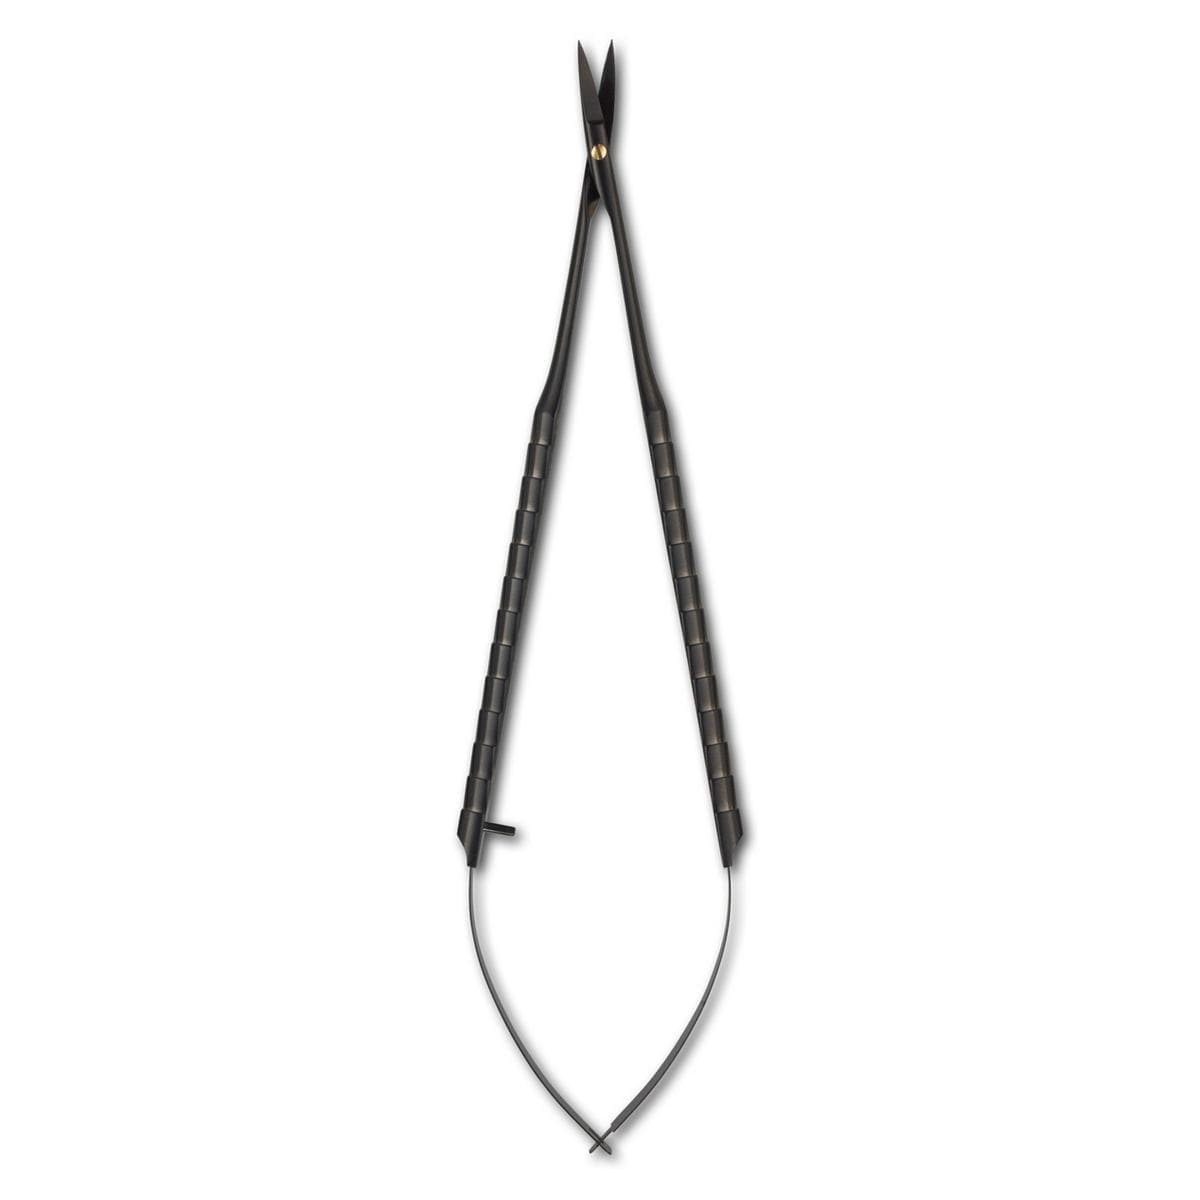 Ciseaux Black Line - Super-Cut SPVX, micro chirurgie - Castroviejo, 18 cm